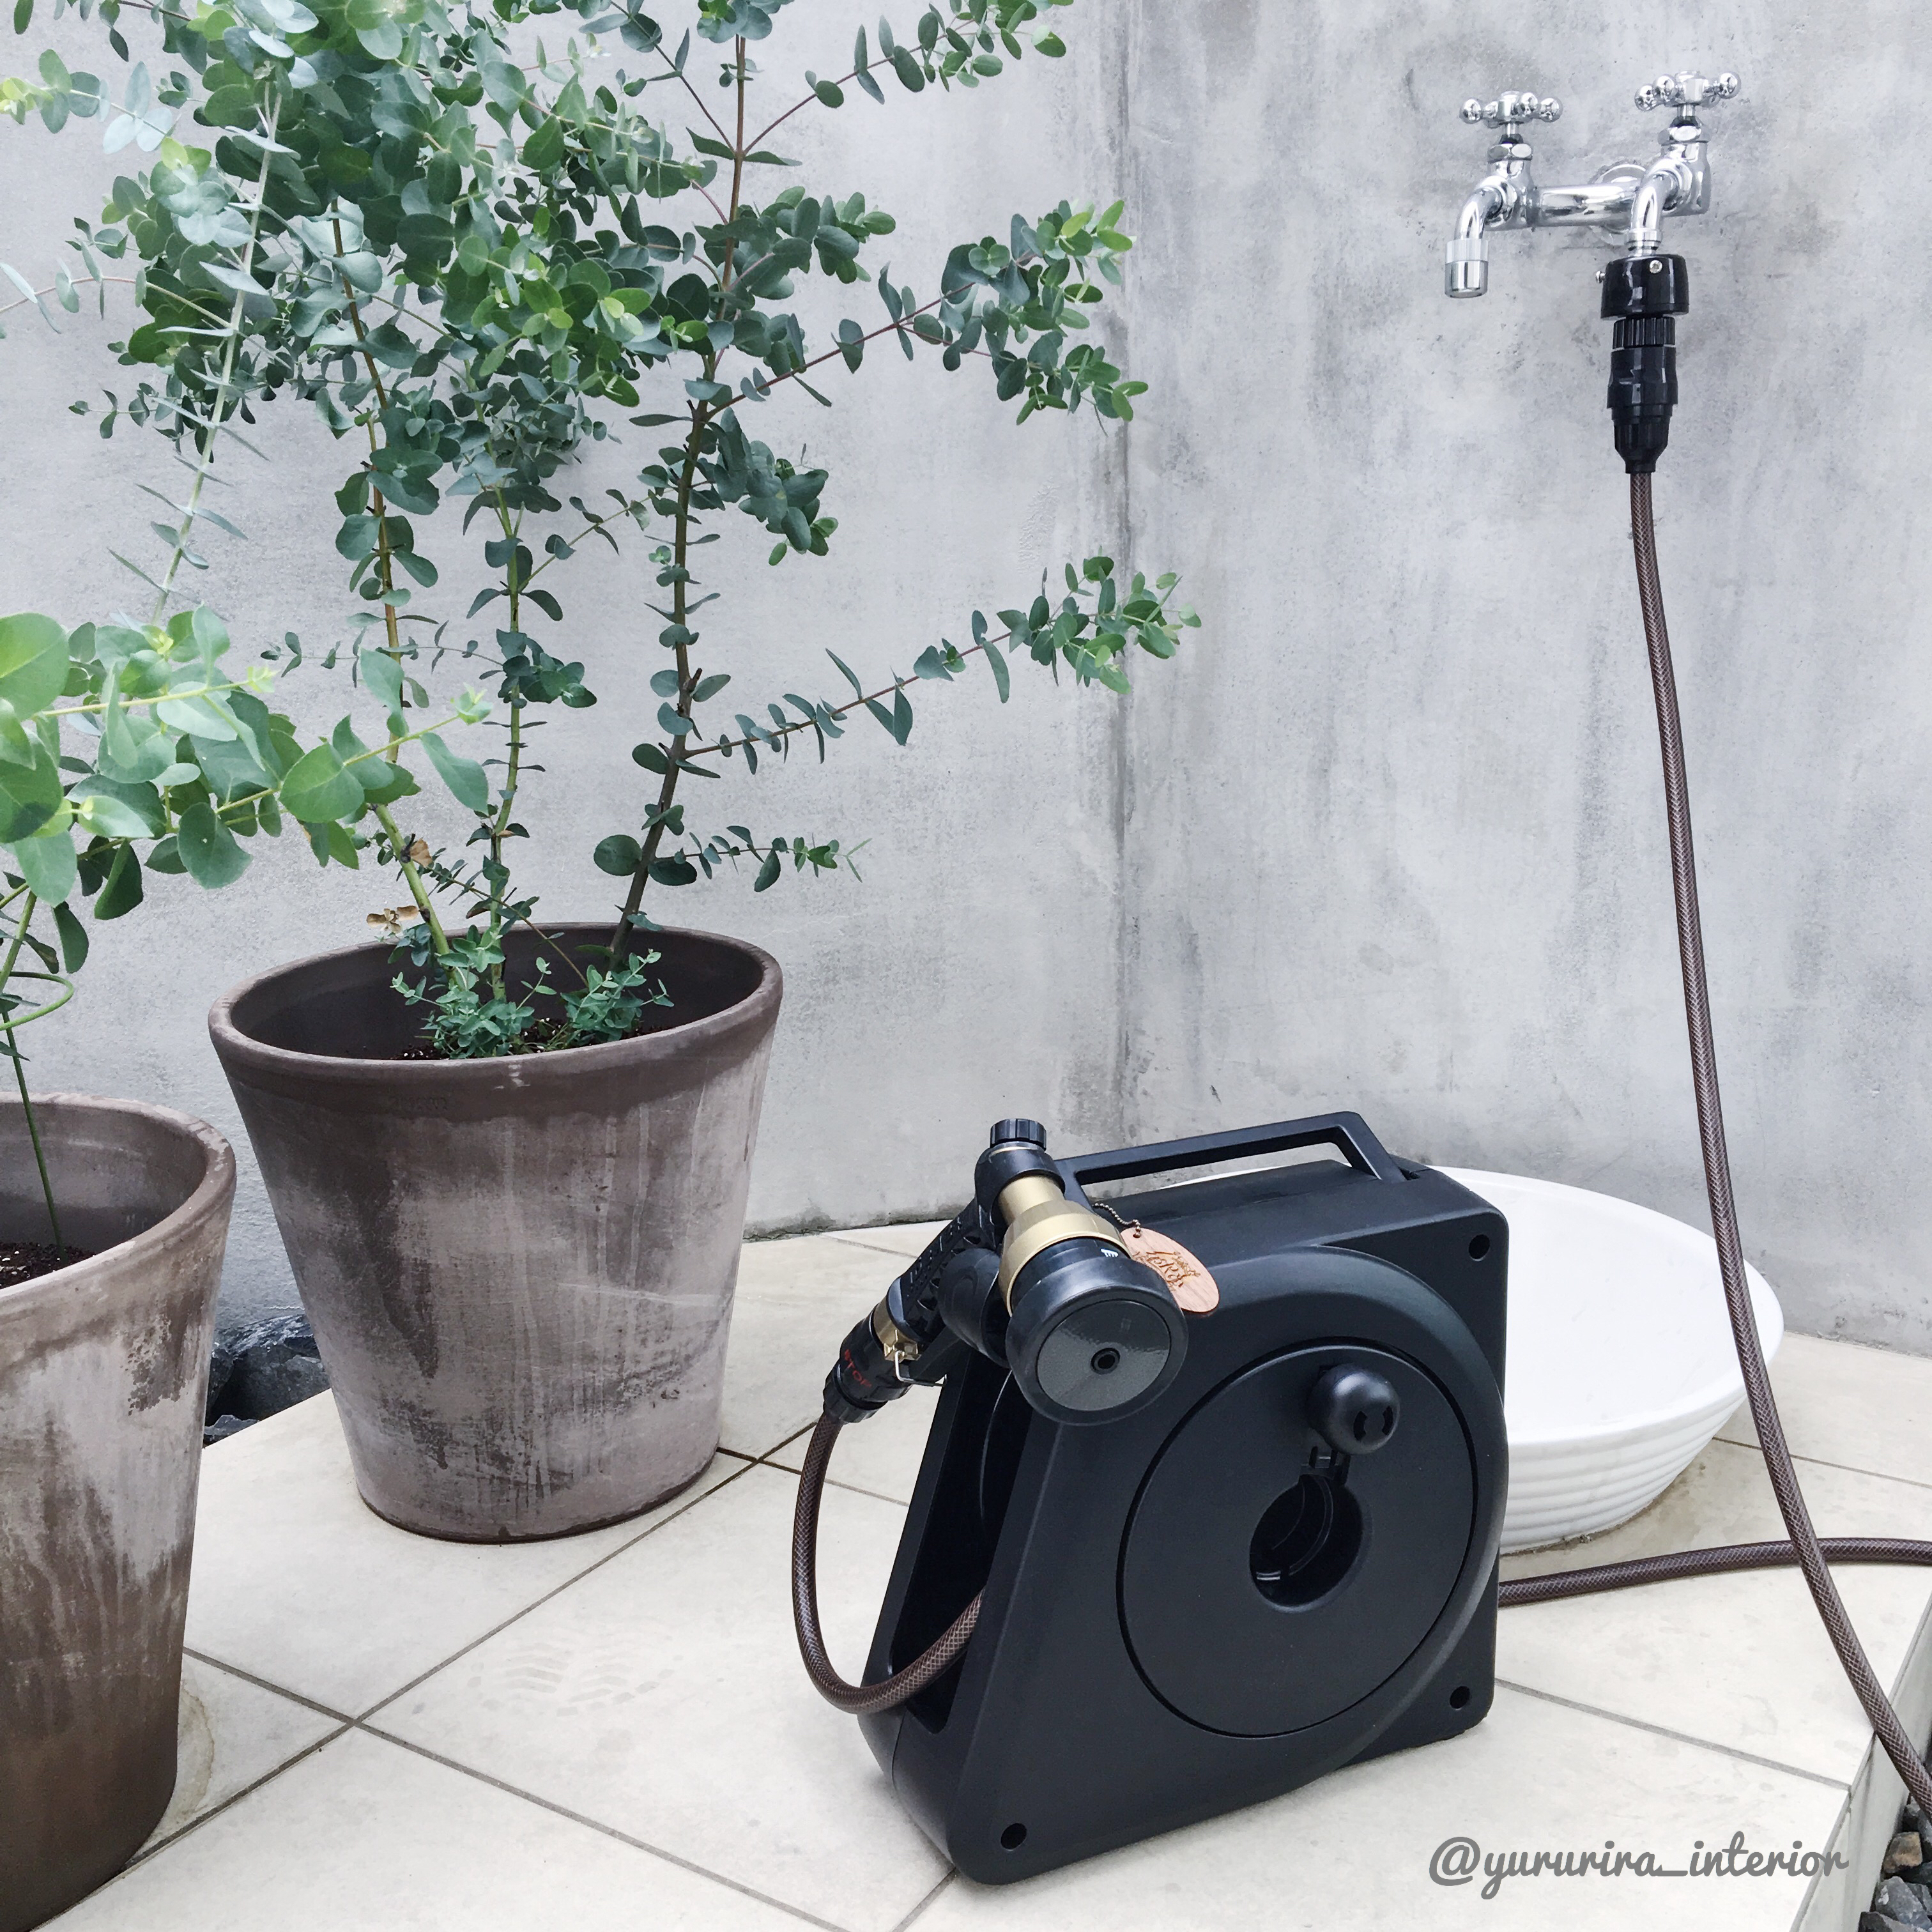 【庭活】新調した黒色ガーデンホースと庭の水栓